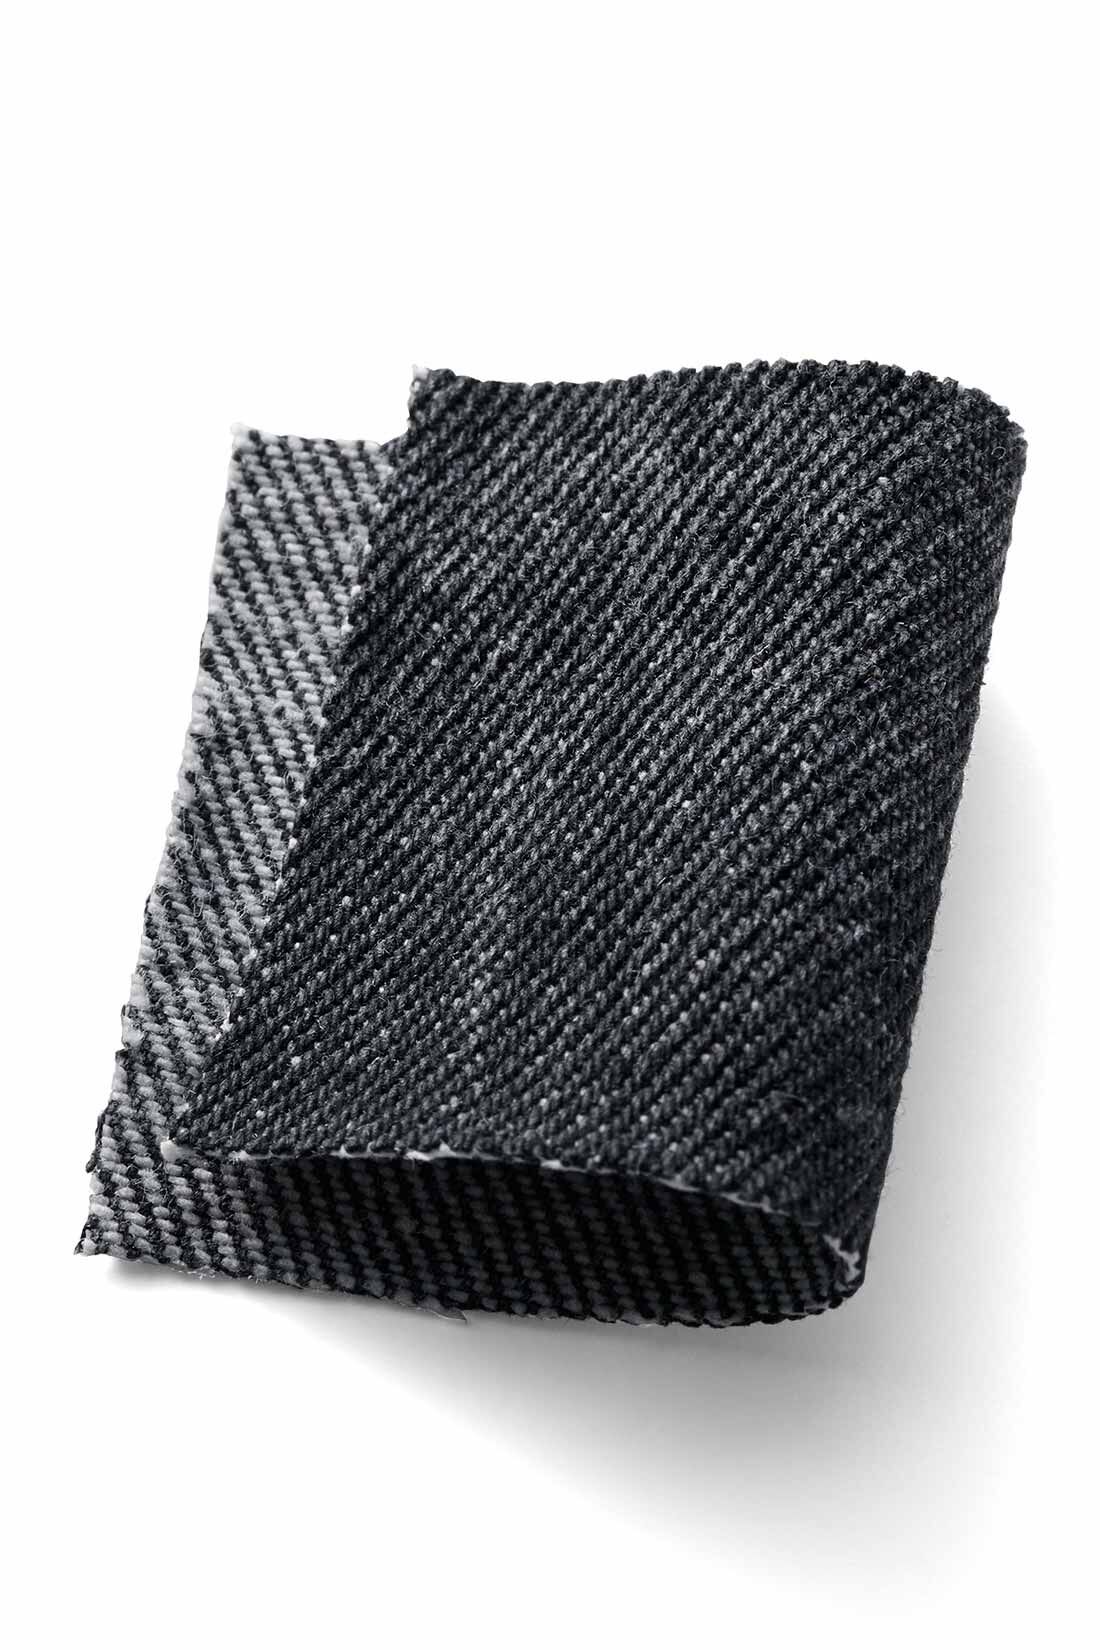 MEDE19F|MEDE19F　ビッグシルエットブラックデニム|ごわごわしない適度な厚みで、通年着用できる12オンスの綿100％デニム生地。